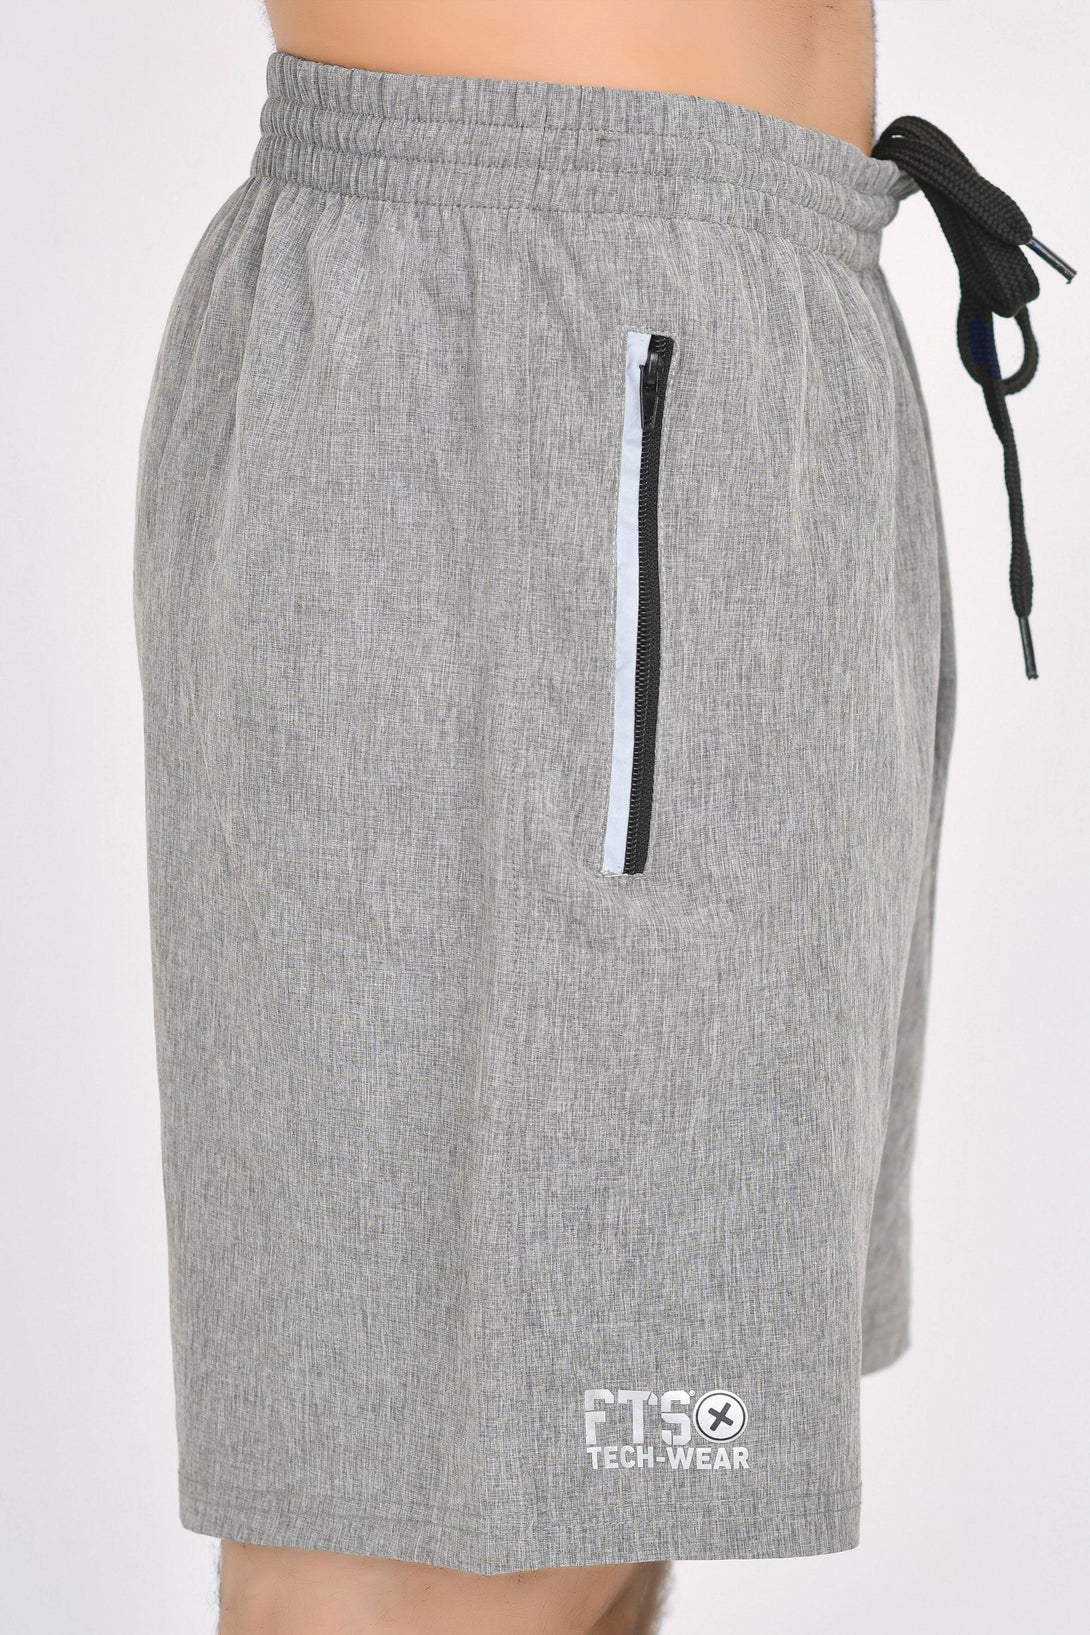 Shorts 100% Polyester NAVY - GREY MELANGE - Pack of 2 - FTS